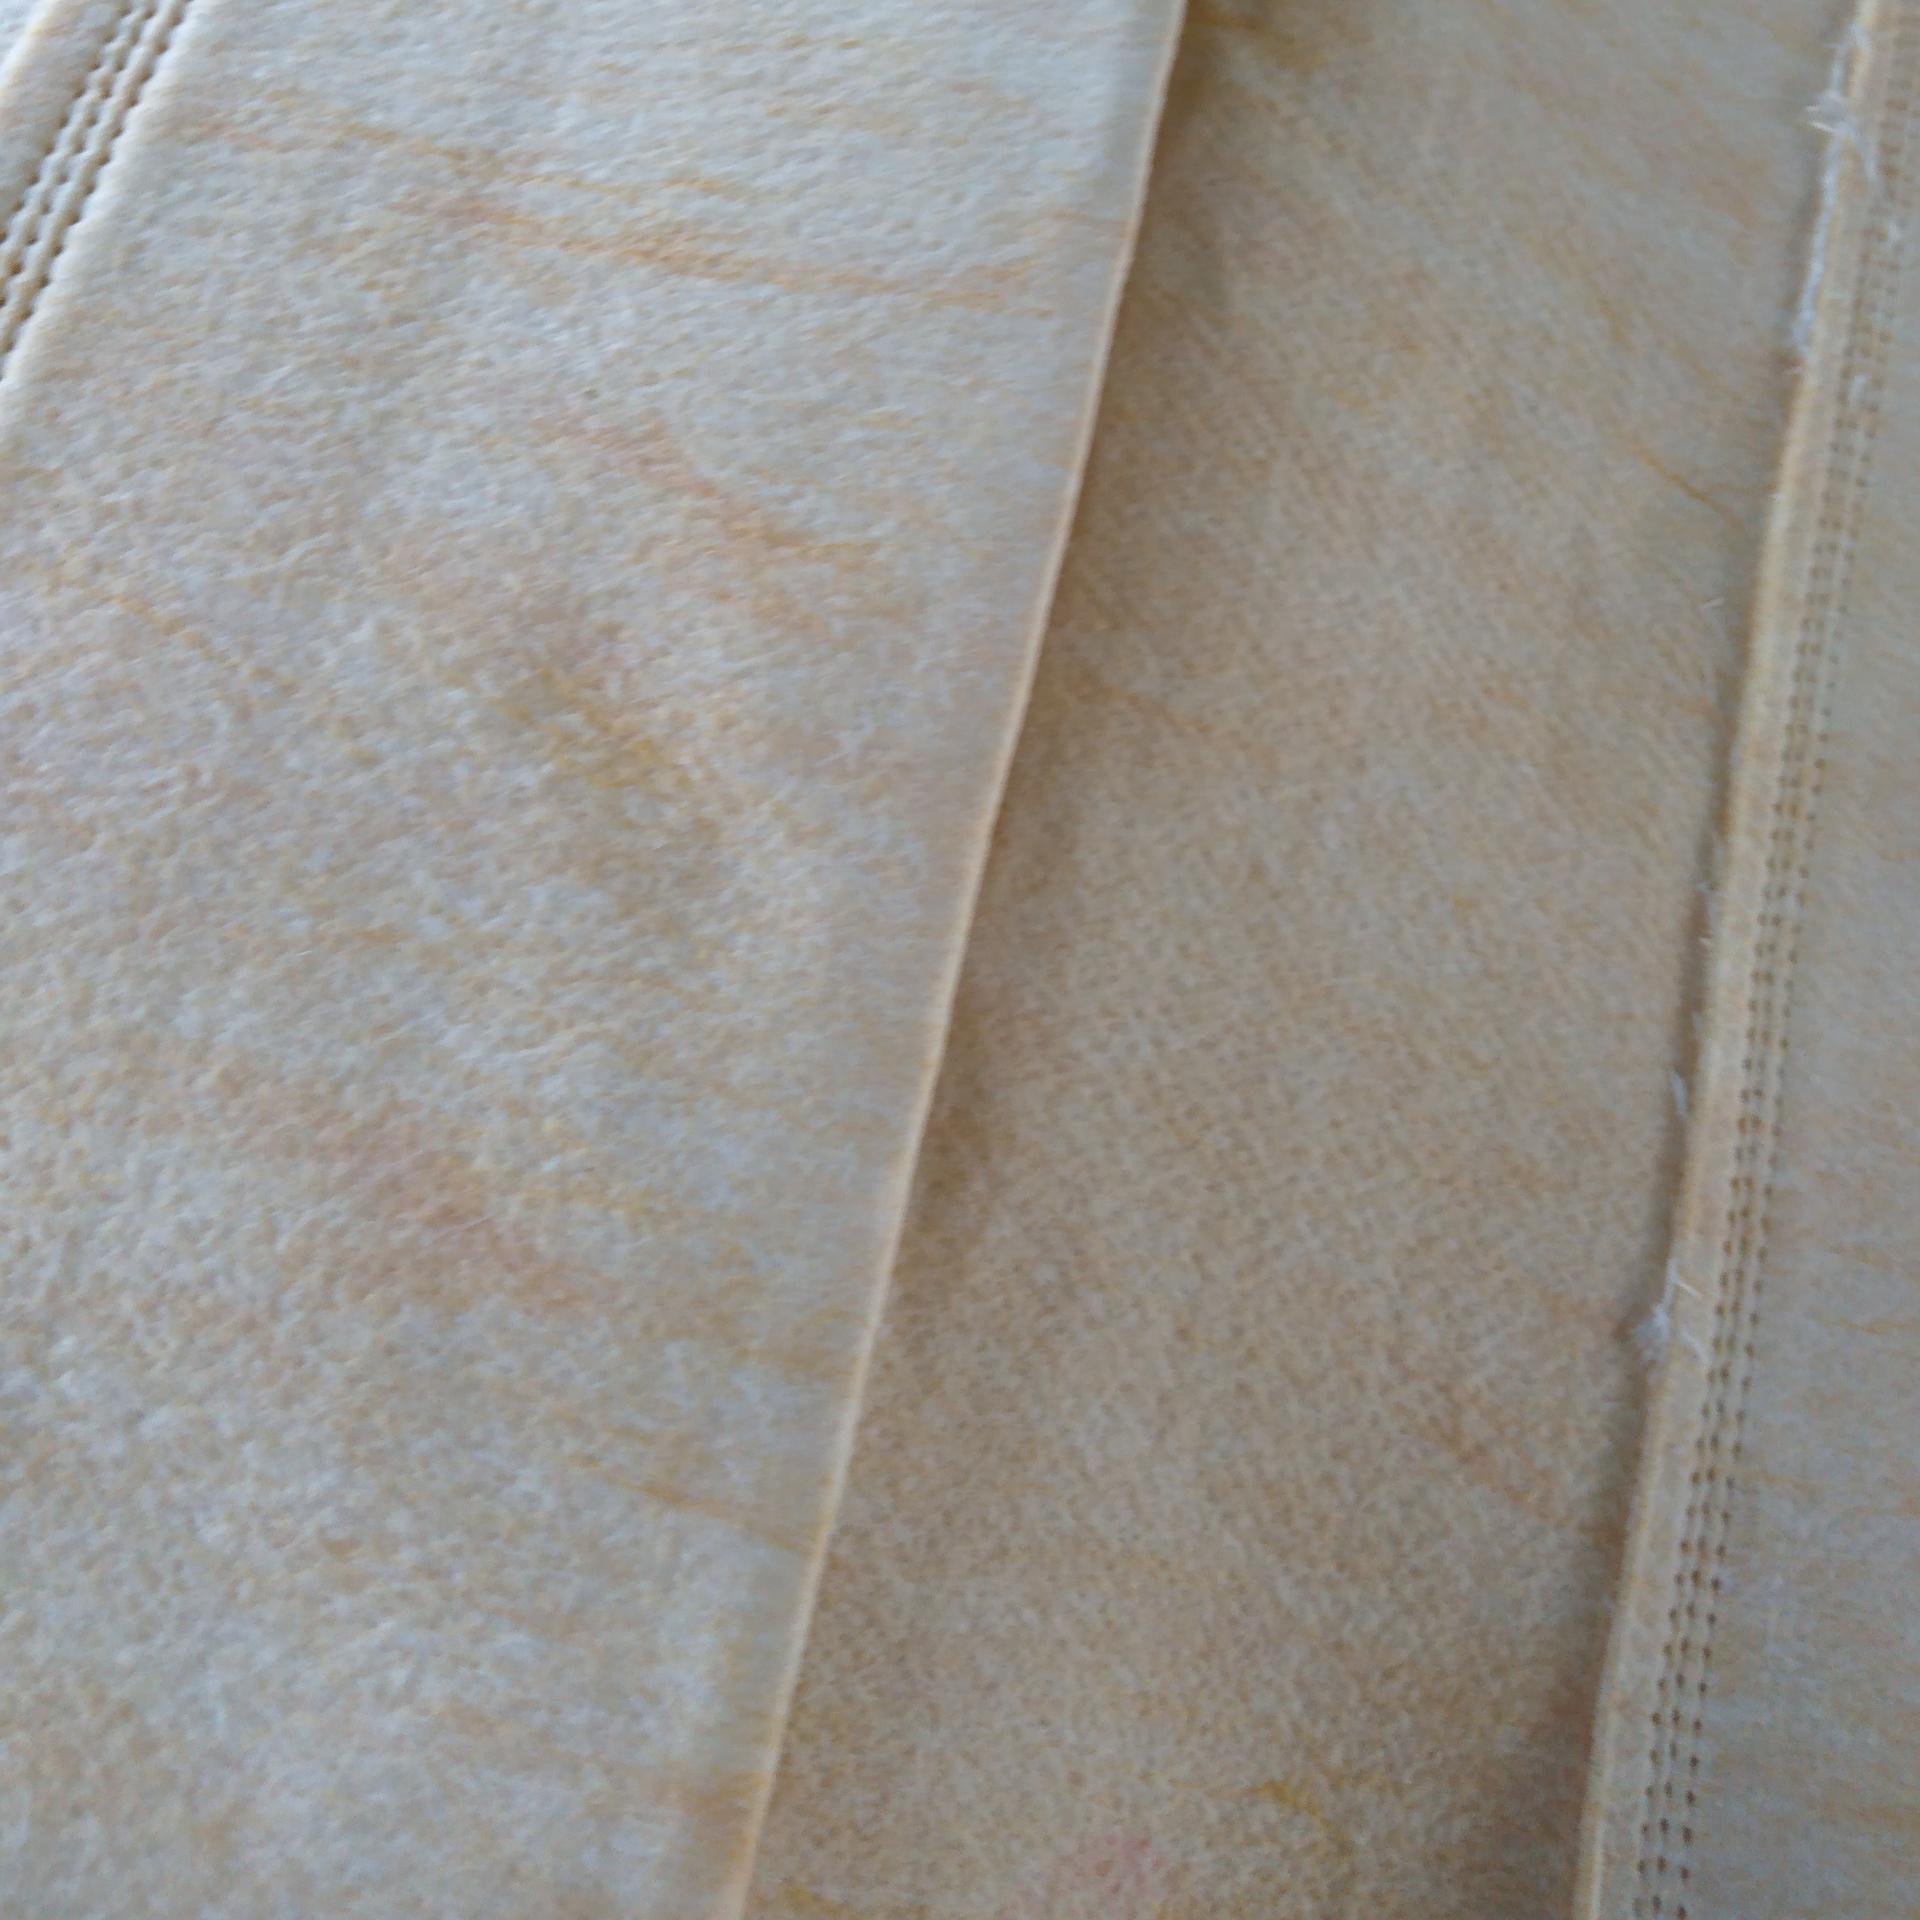 高温除尘器布袋 500g涤纶针刺毡除尘布袋 防静电除尘布袋 多种材质布袋定制